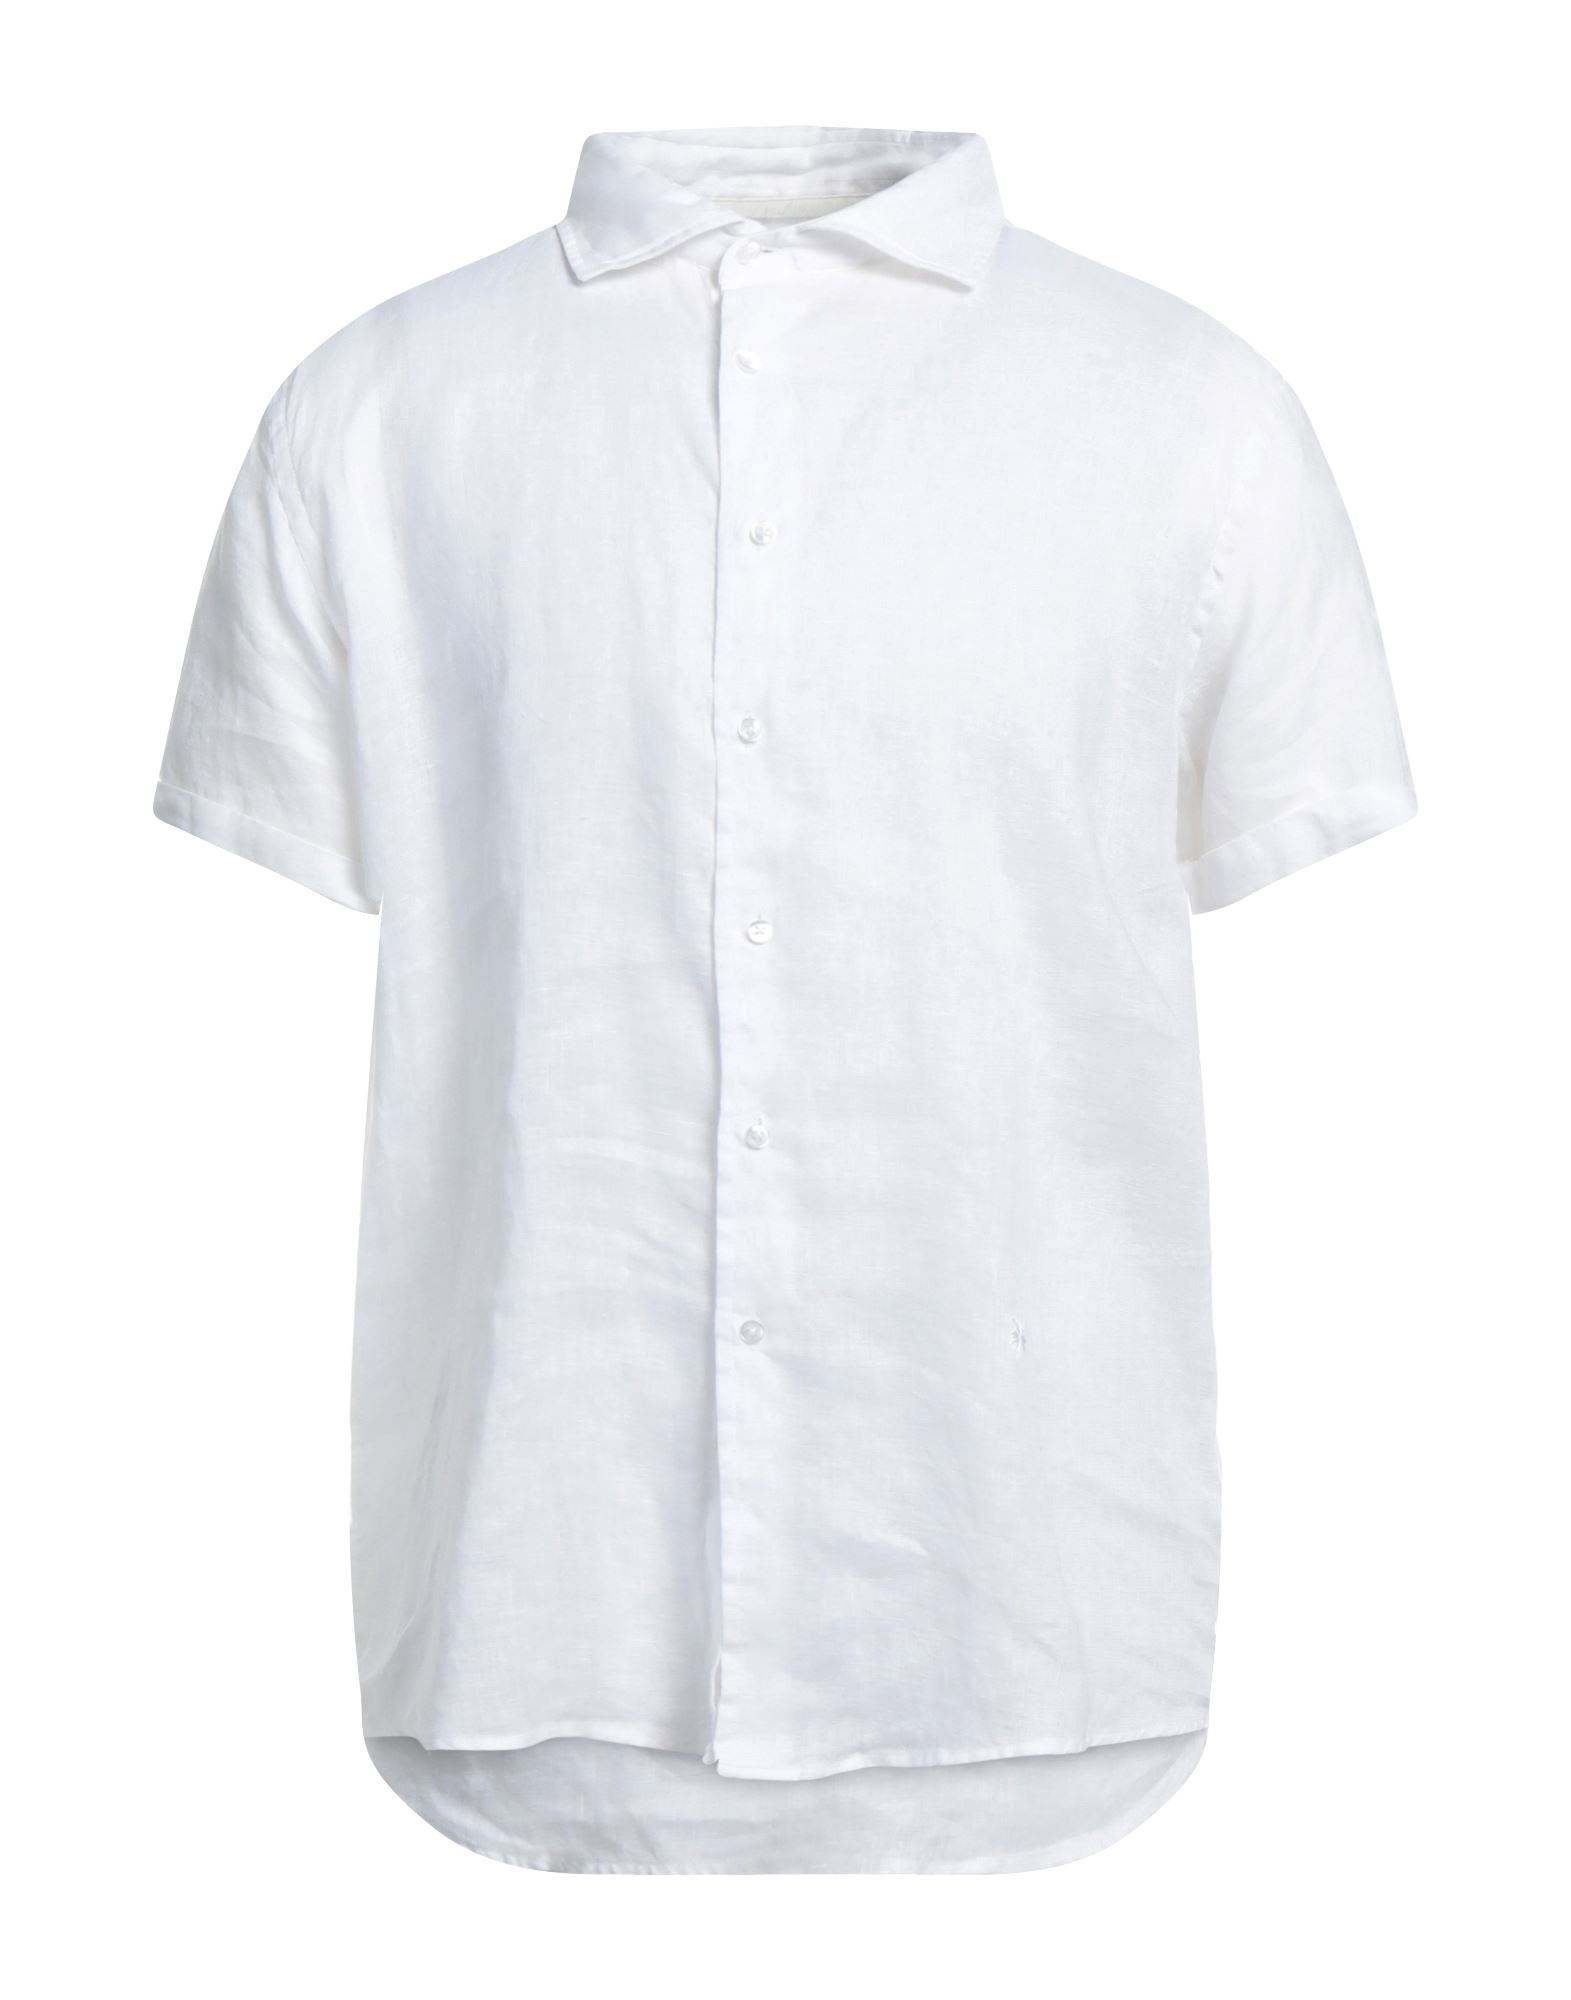 Diktat Shirts In White